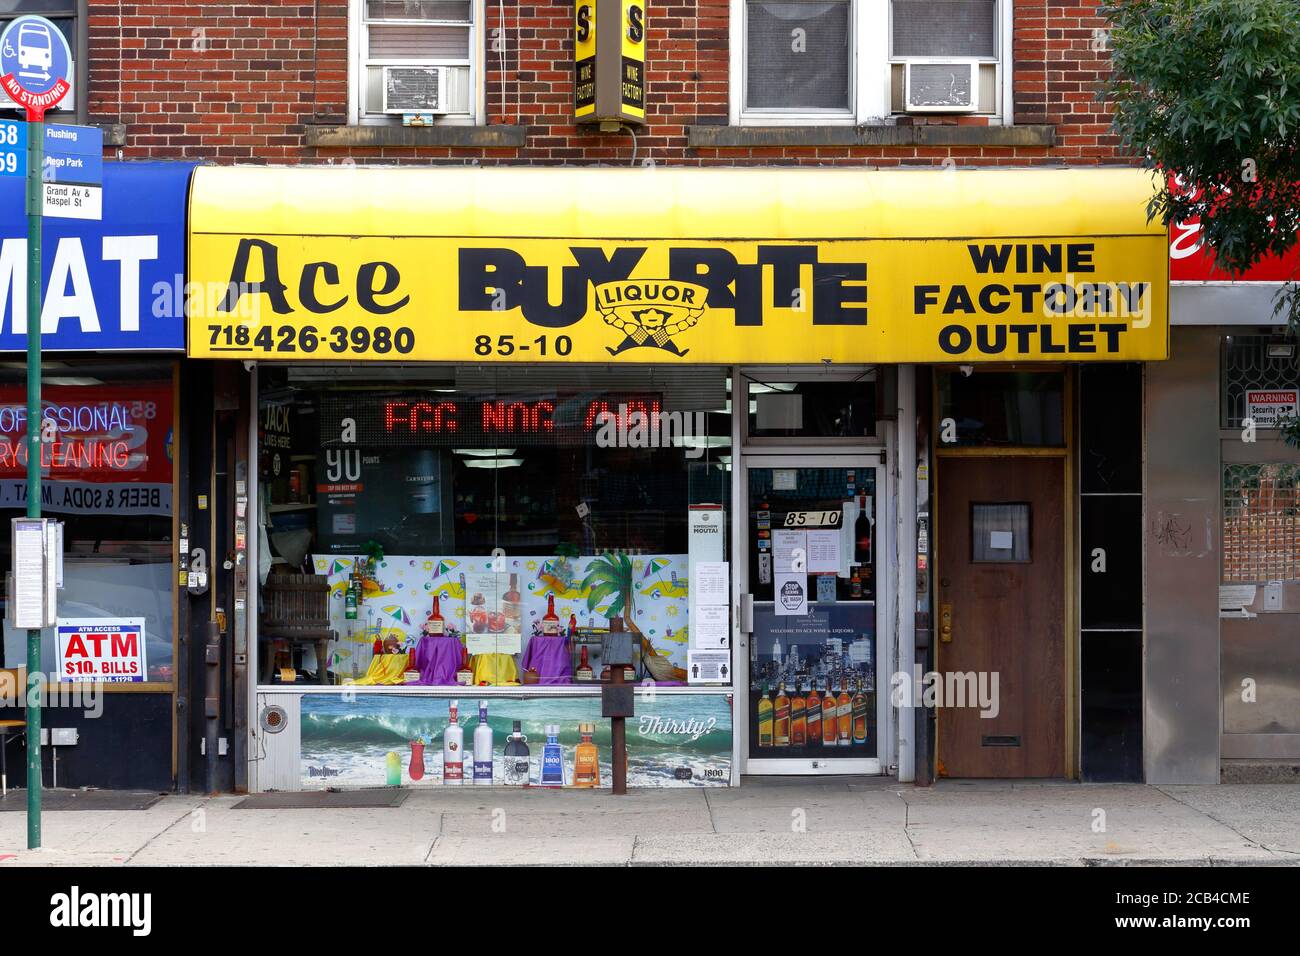 ACE Wine Liquors, 85-10 Grand Ave, Queens, Nueva York. Foto del escaparate de Nueva York de una tienda de licores en el barrio de Elmhurst. Foto de stock